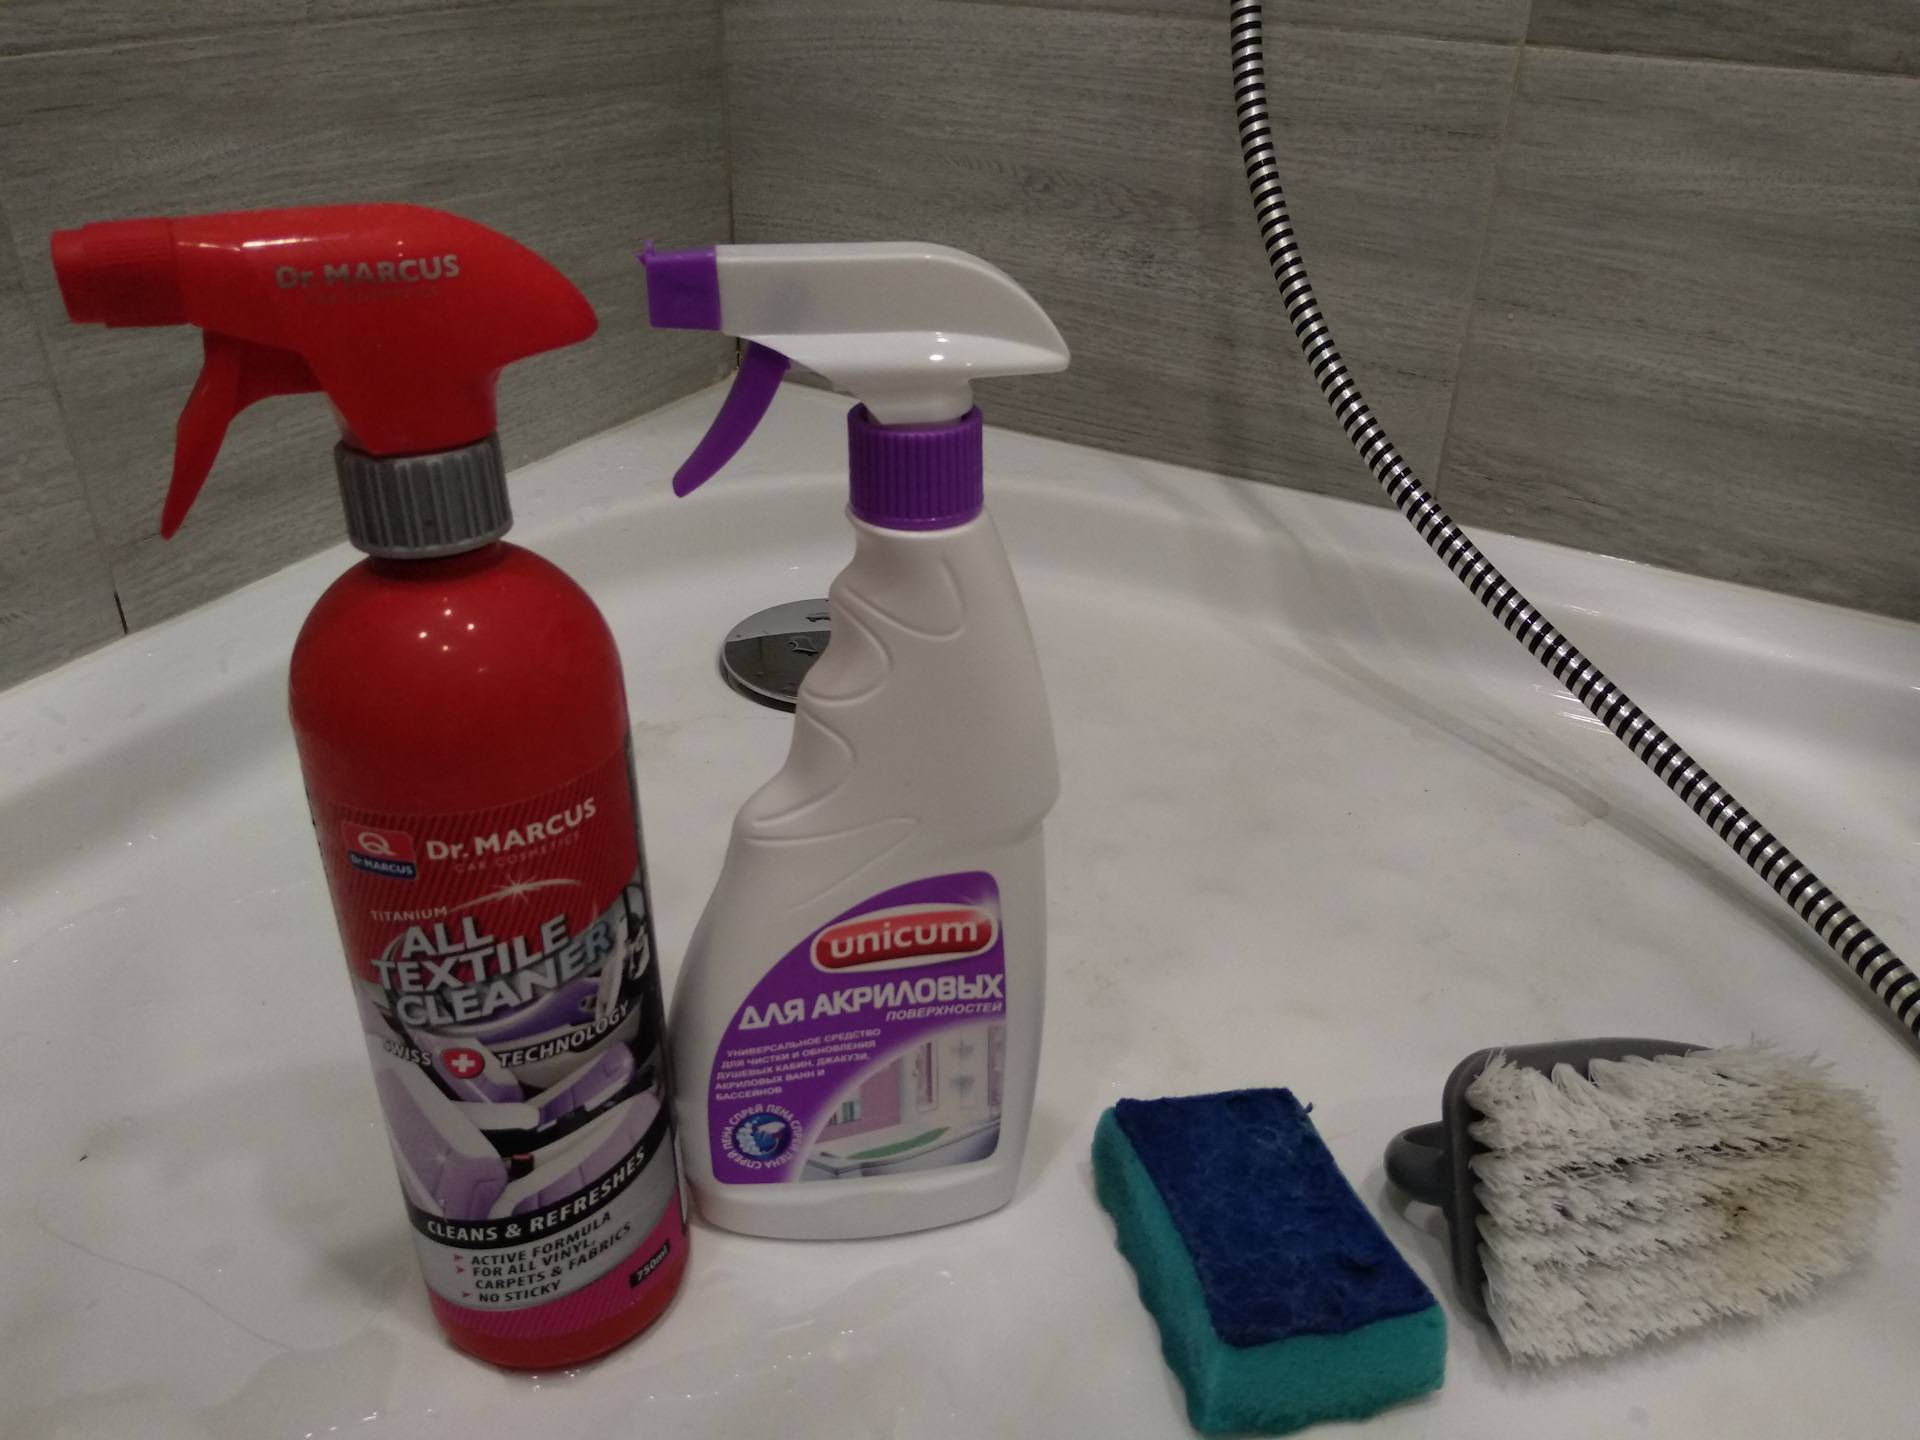 Как очистить чугунную ванну в домашних условиях?